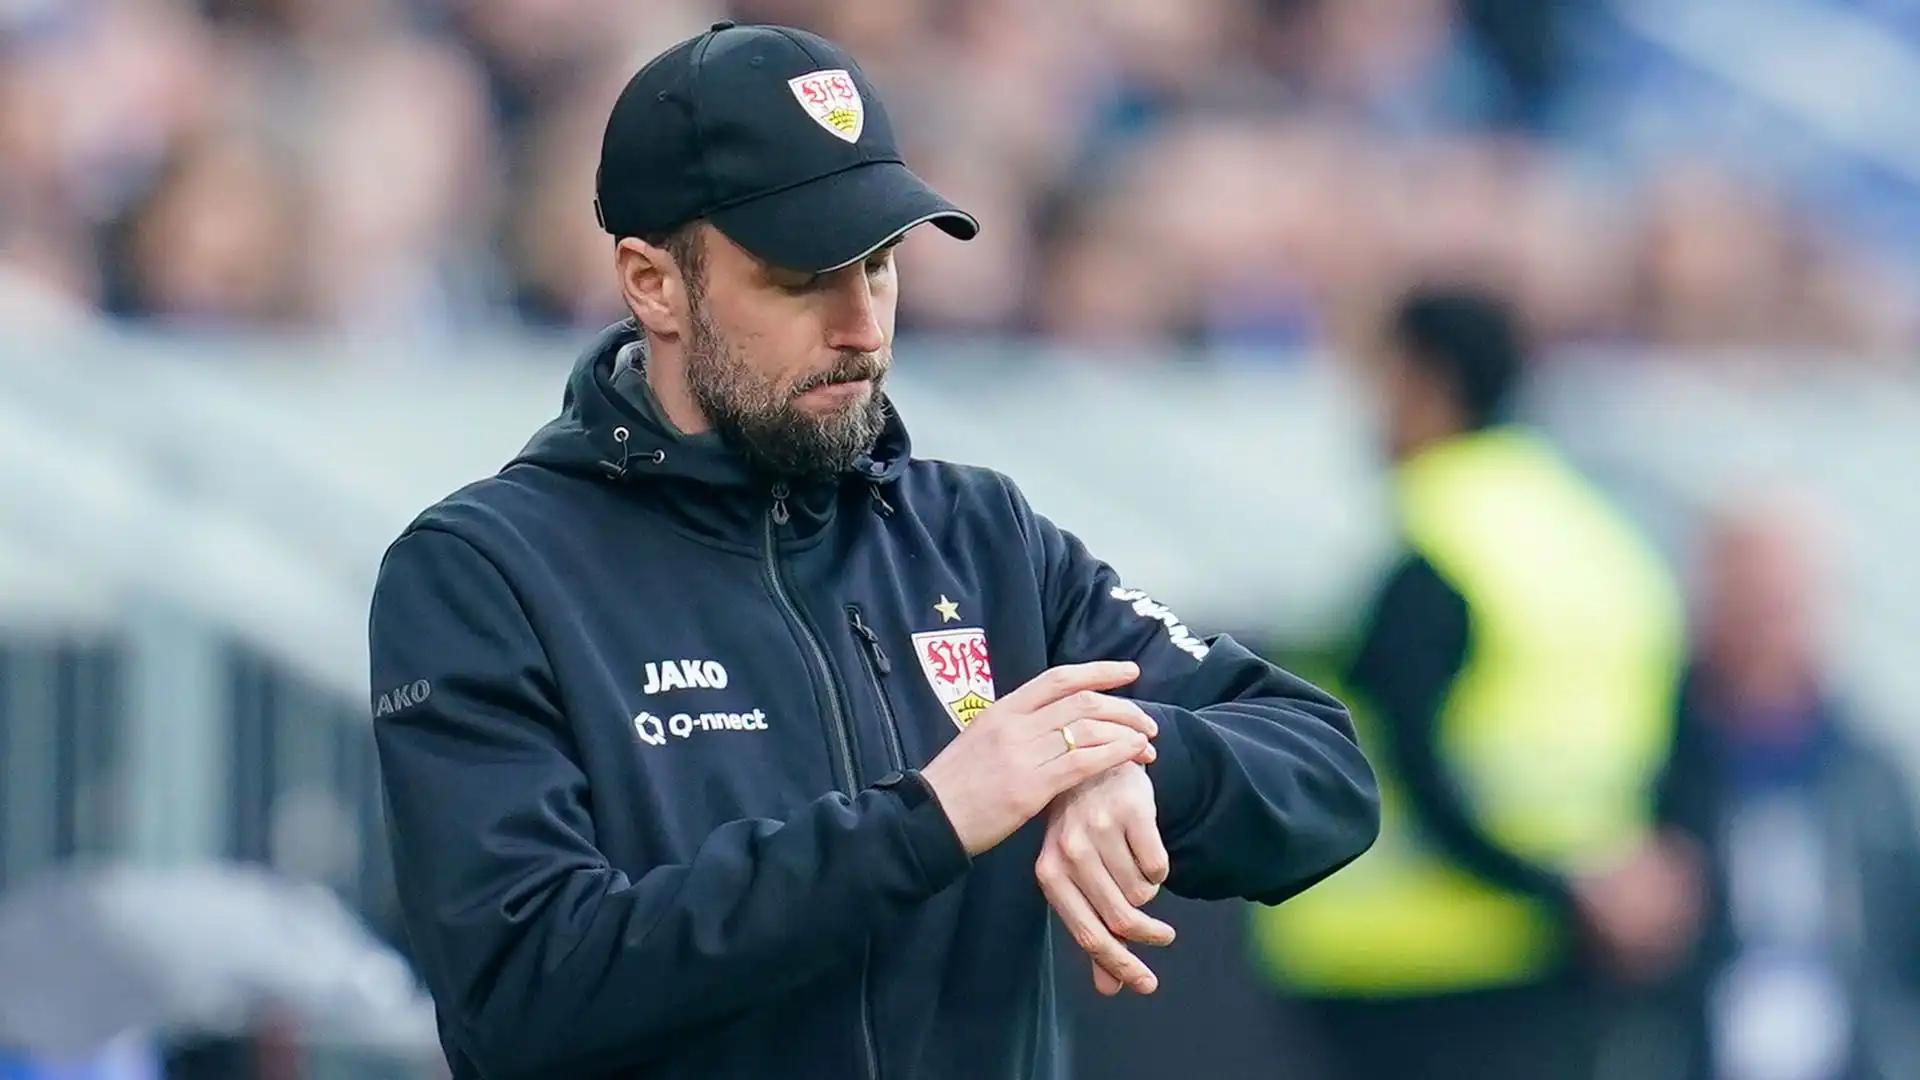 E' stato il VfB ad annunciarlo: Hoeneß ha rinnovato per altre due stagioni, fino al 2027